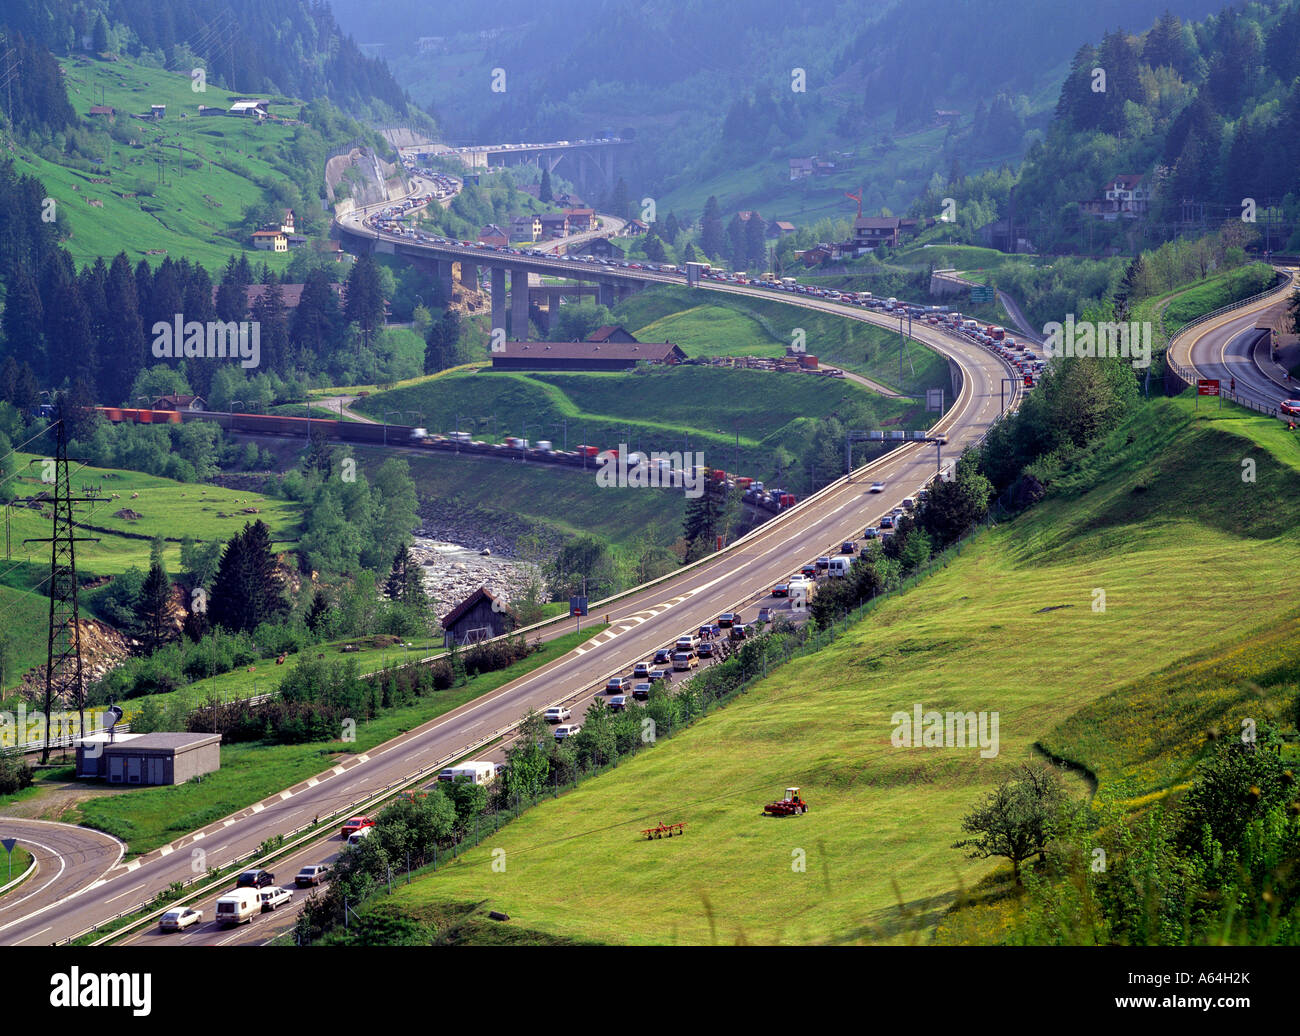 Holiday congestione del traffico inceppata sul San Gottardo autostrada vicino al villaggio di wassen swiss alpes il cantone di uri in Svizzera Foto Stock